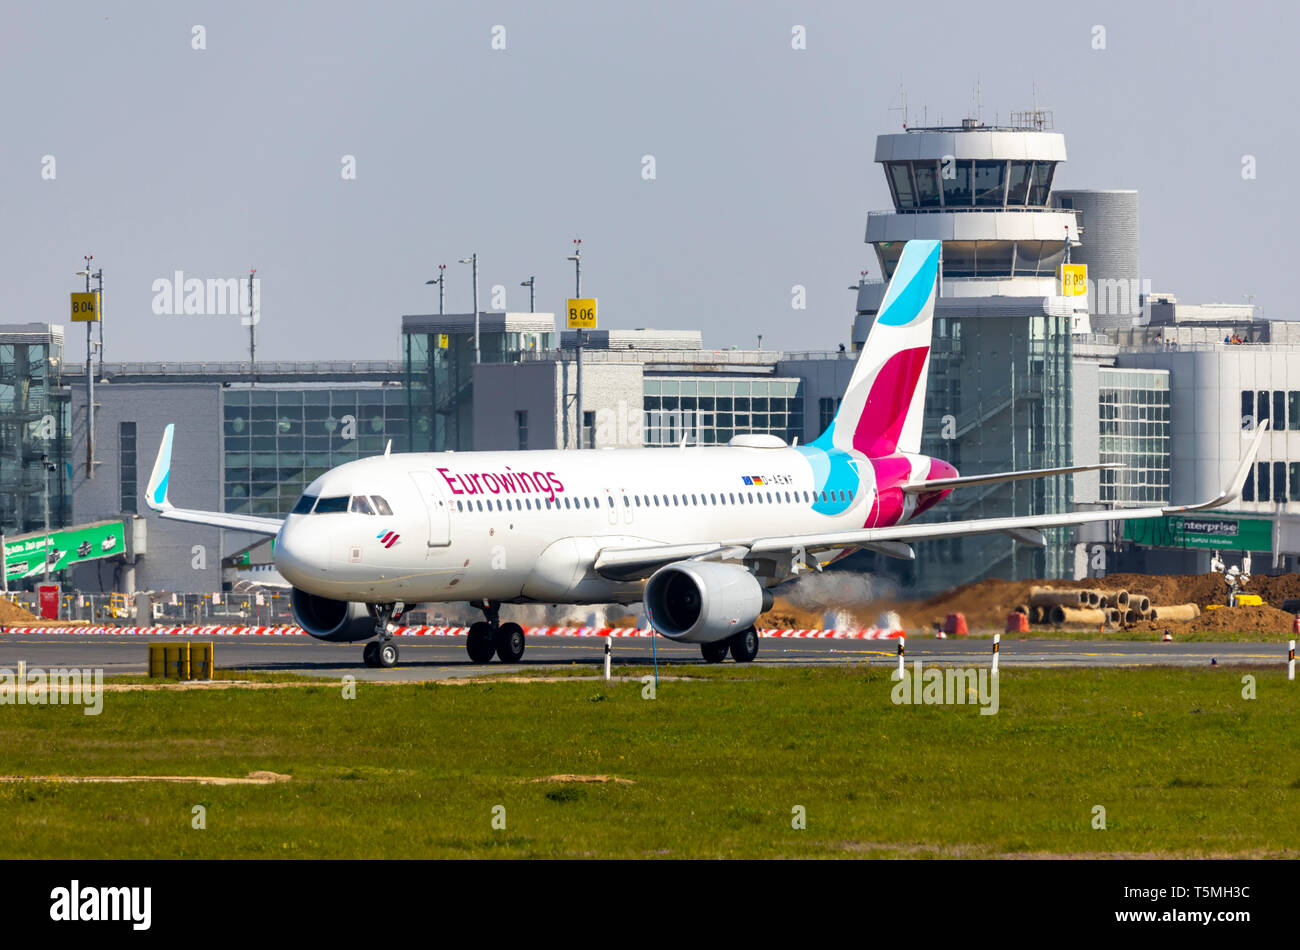 L'aeroporto internazionale di Düsseldorf, DUS, aereo Eurowings Airbus A320, sulla pista di rullaggio, del controllo del traffico aereo tower, edificio terminal, Foto Stock